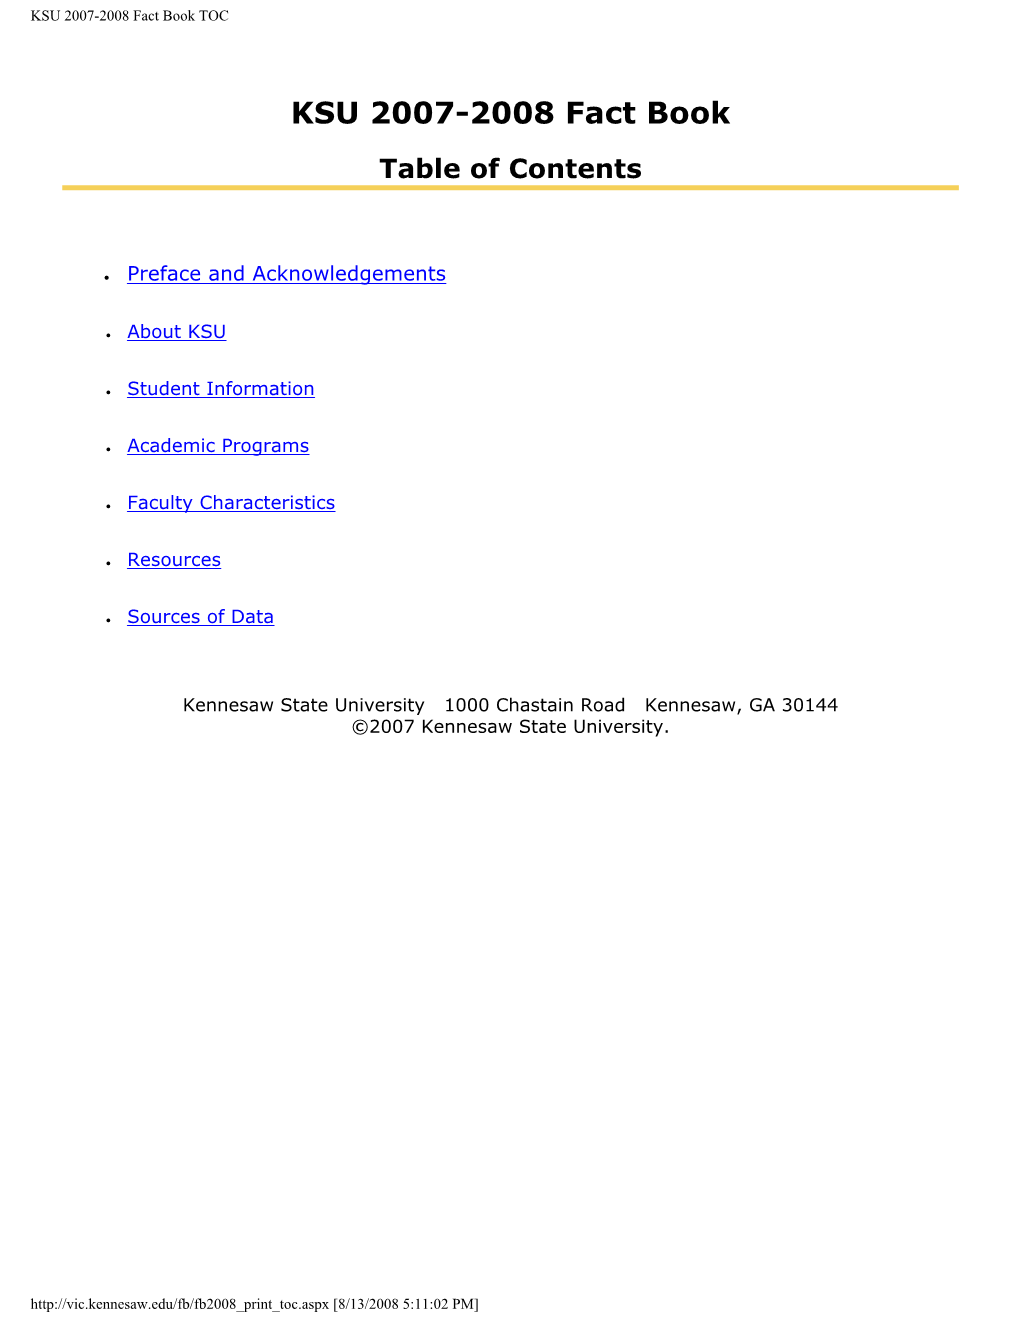 KSU 2007-2008 Fact Book TOC